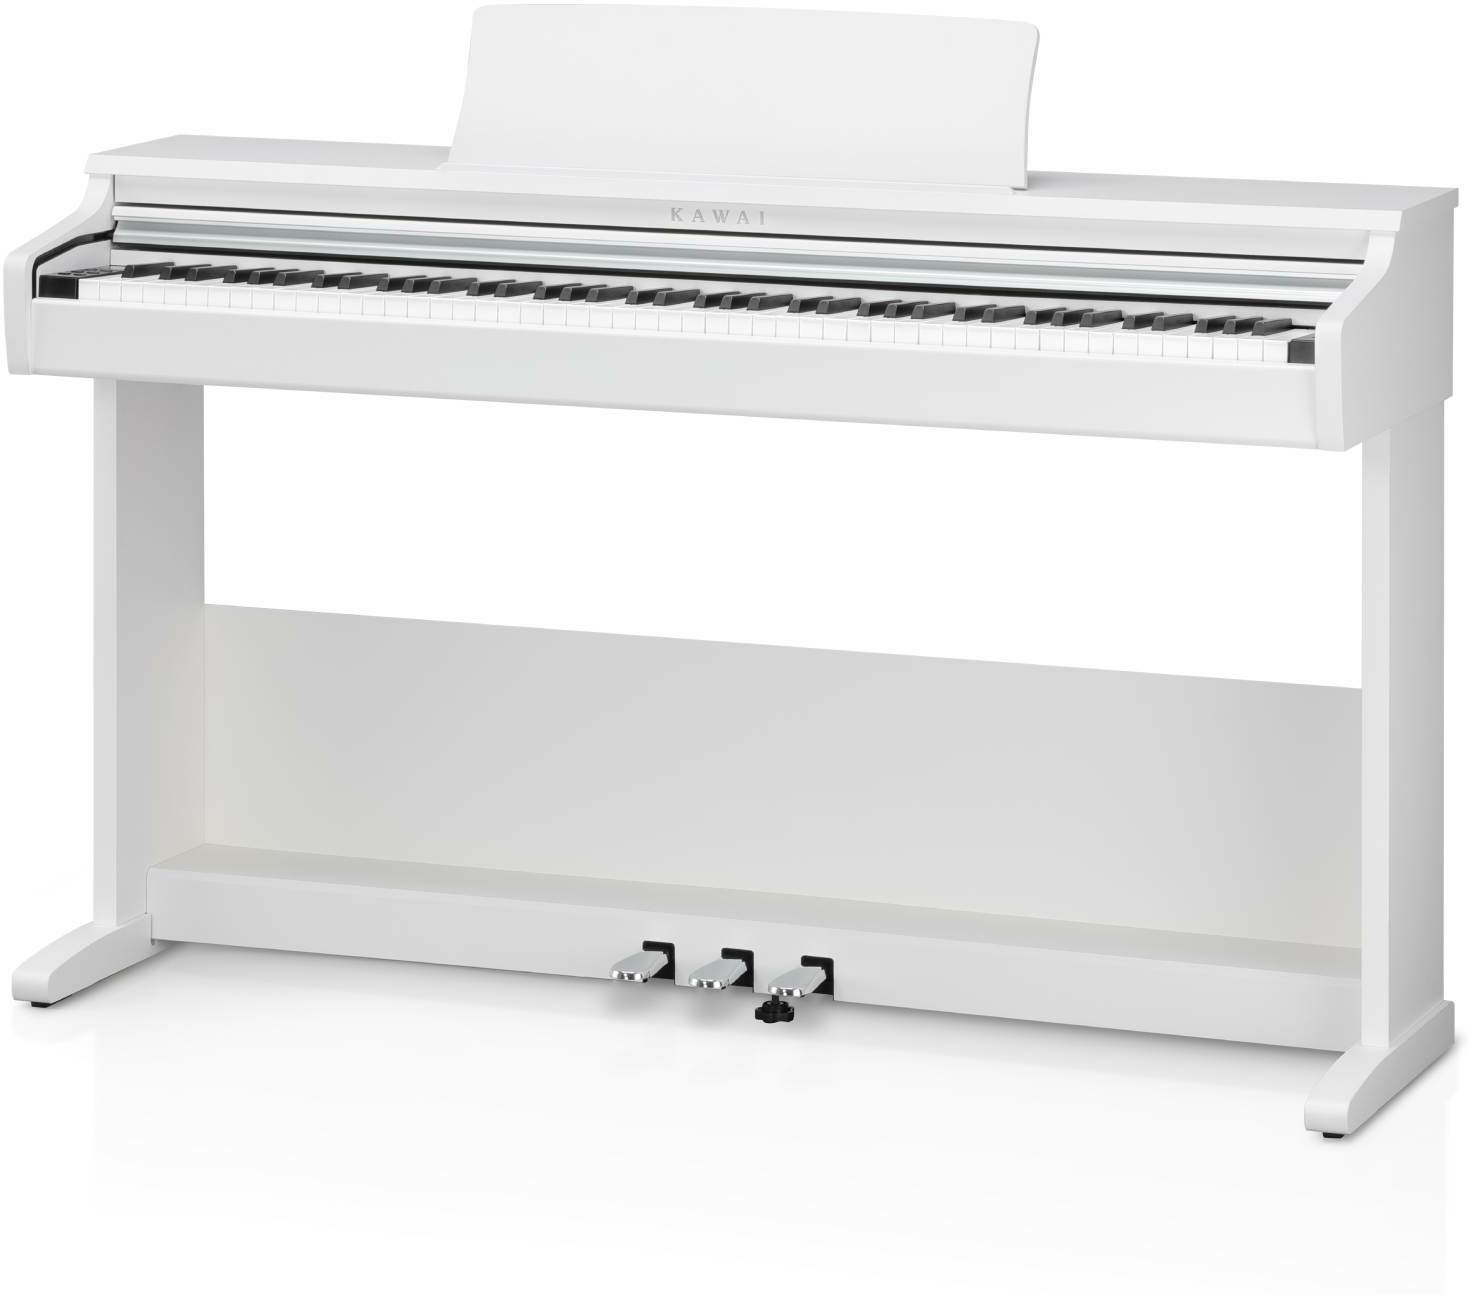 Kawai Kdp 75 Wh - Digitale piano met meubel - Main picture